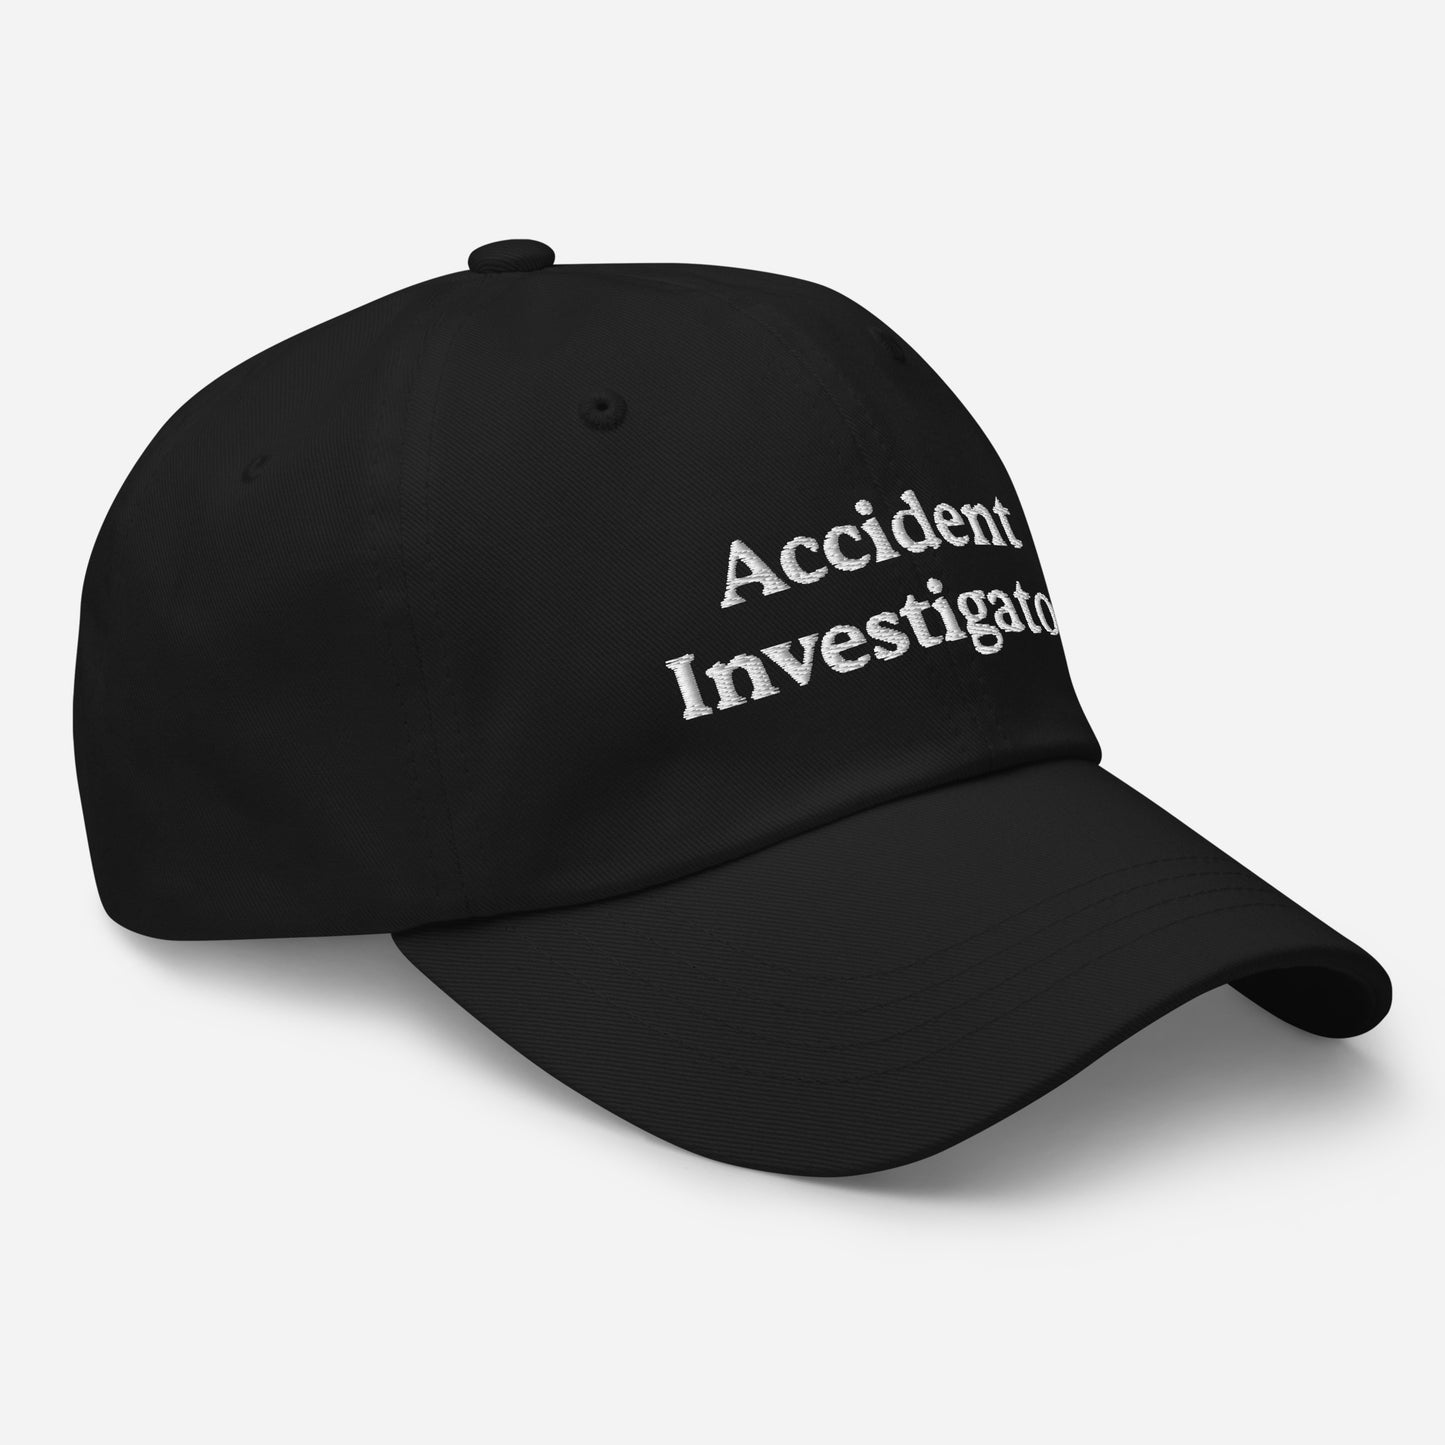 Accident Investigator Hat